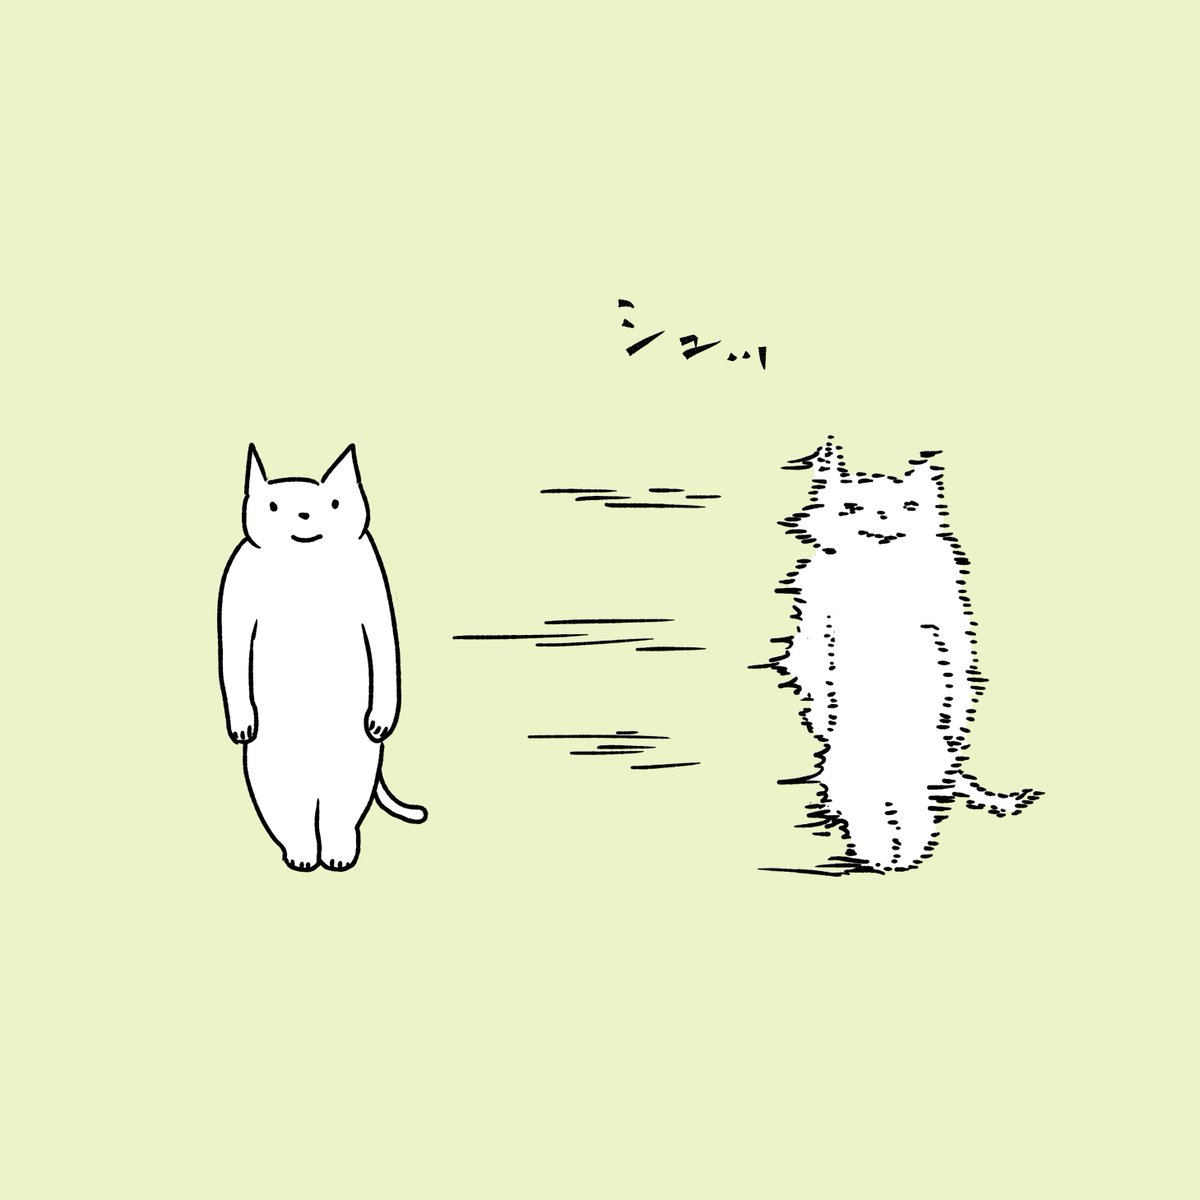 石川ともこ Pa Twitter 時間が足りない気がするのでもう少し素早く動きたい 今週も頑張りましょう Illustration イラスト 猫 ねこ しろさん 時間 素早い